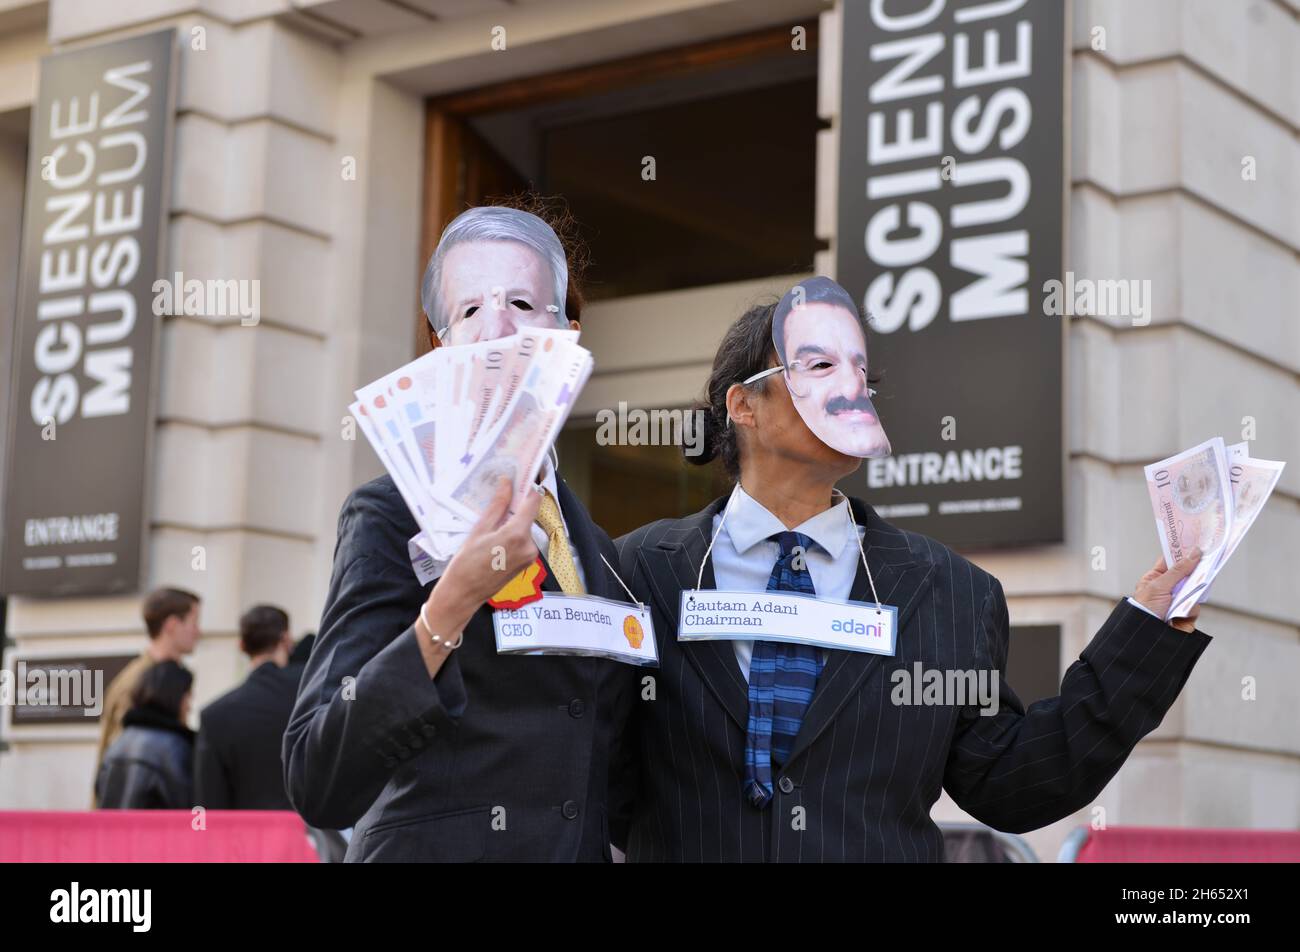 Demonstranten, die als Adani-Vorsitzender Gautam Adani und Shell-CEO Ben van Beurden gekleidet waren, posieren während der Demonstration mit gefälschtem Geld. Extinction Rebellion-Aktivisten veranstalteten einen Protest gegenüber dem Science Museum in South Kensington gegen das Sponsoring des Museums durch die fossilen Energiekonzerne Shell und Adani. Stockfoto